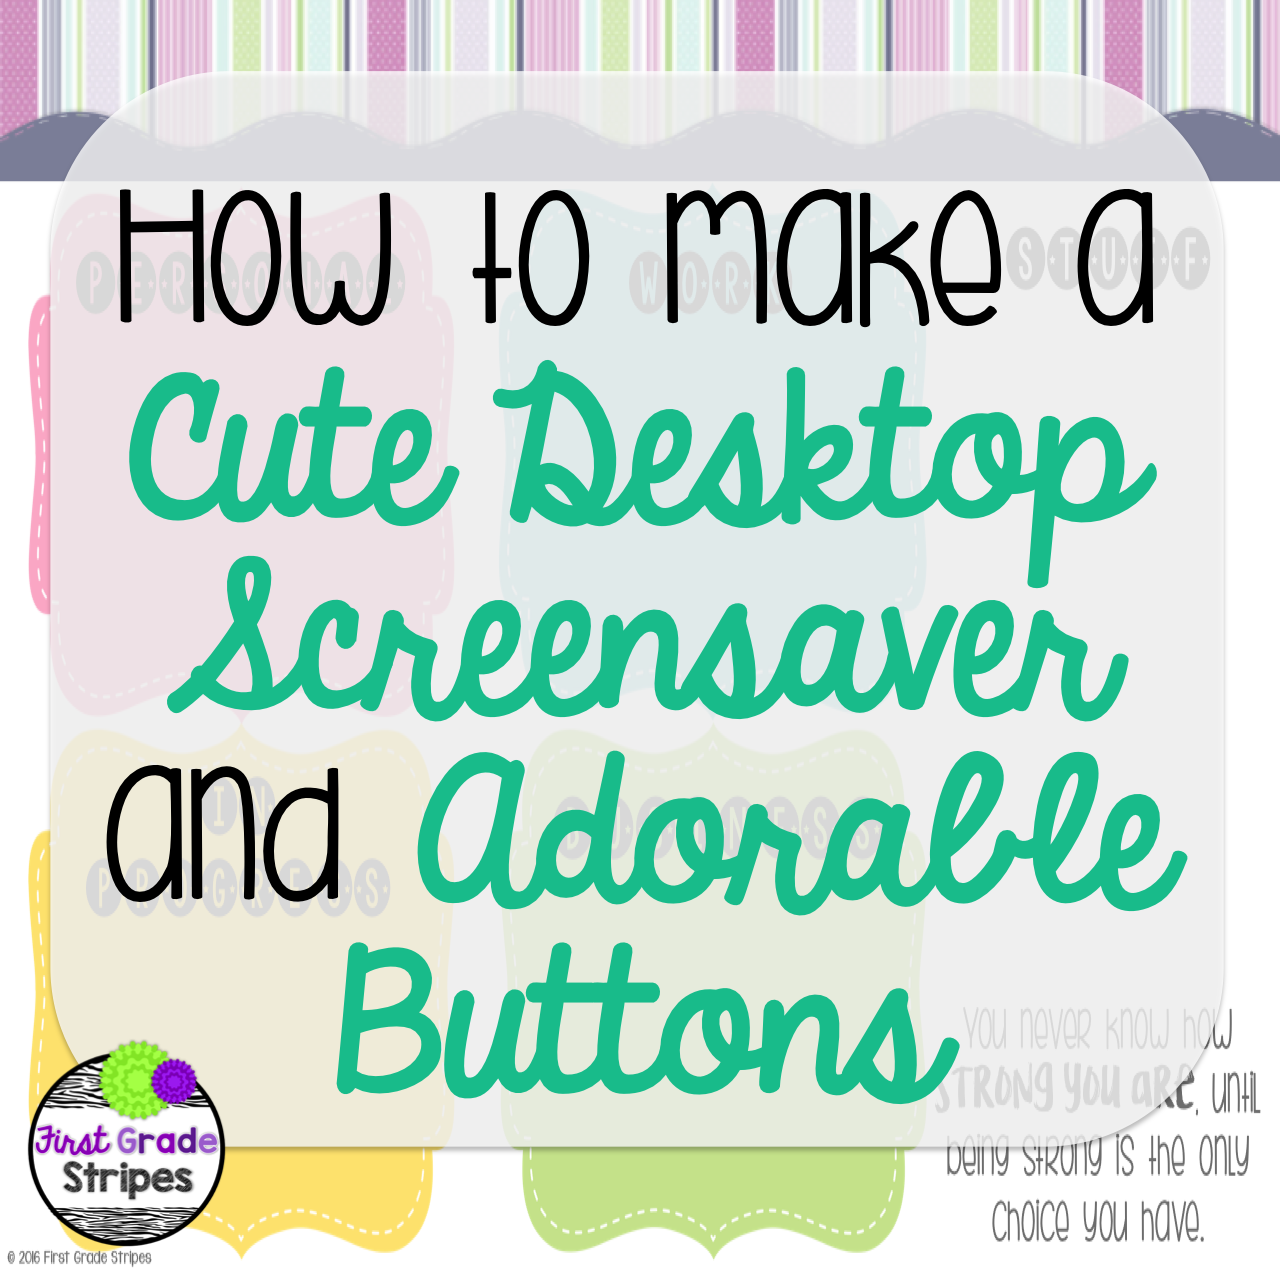 how to create custom screensaver